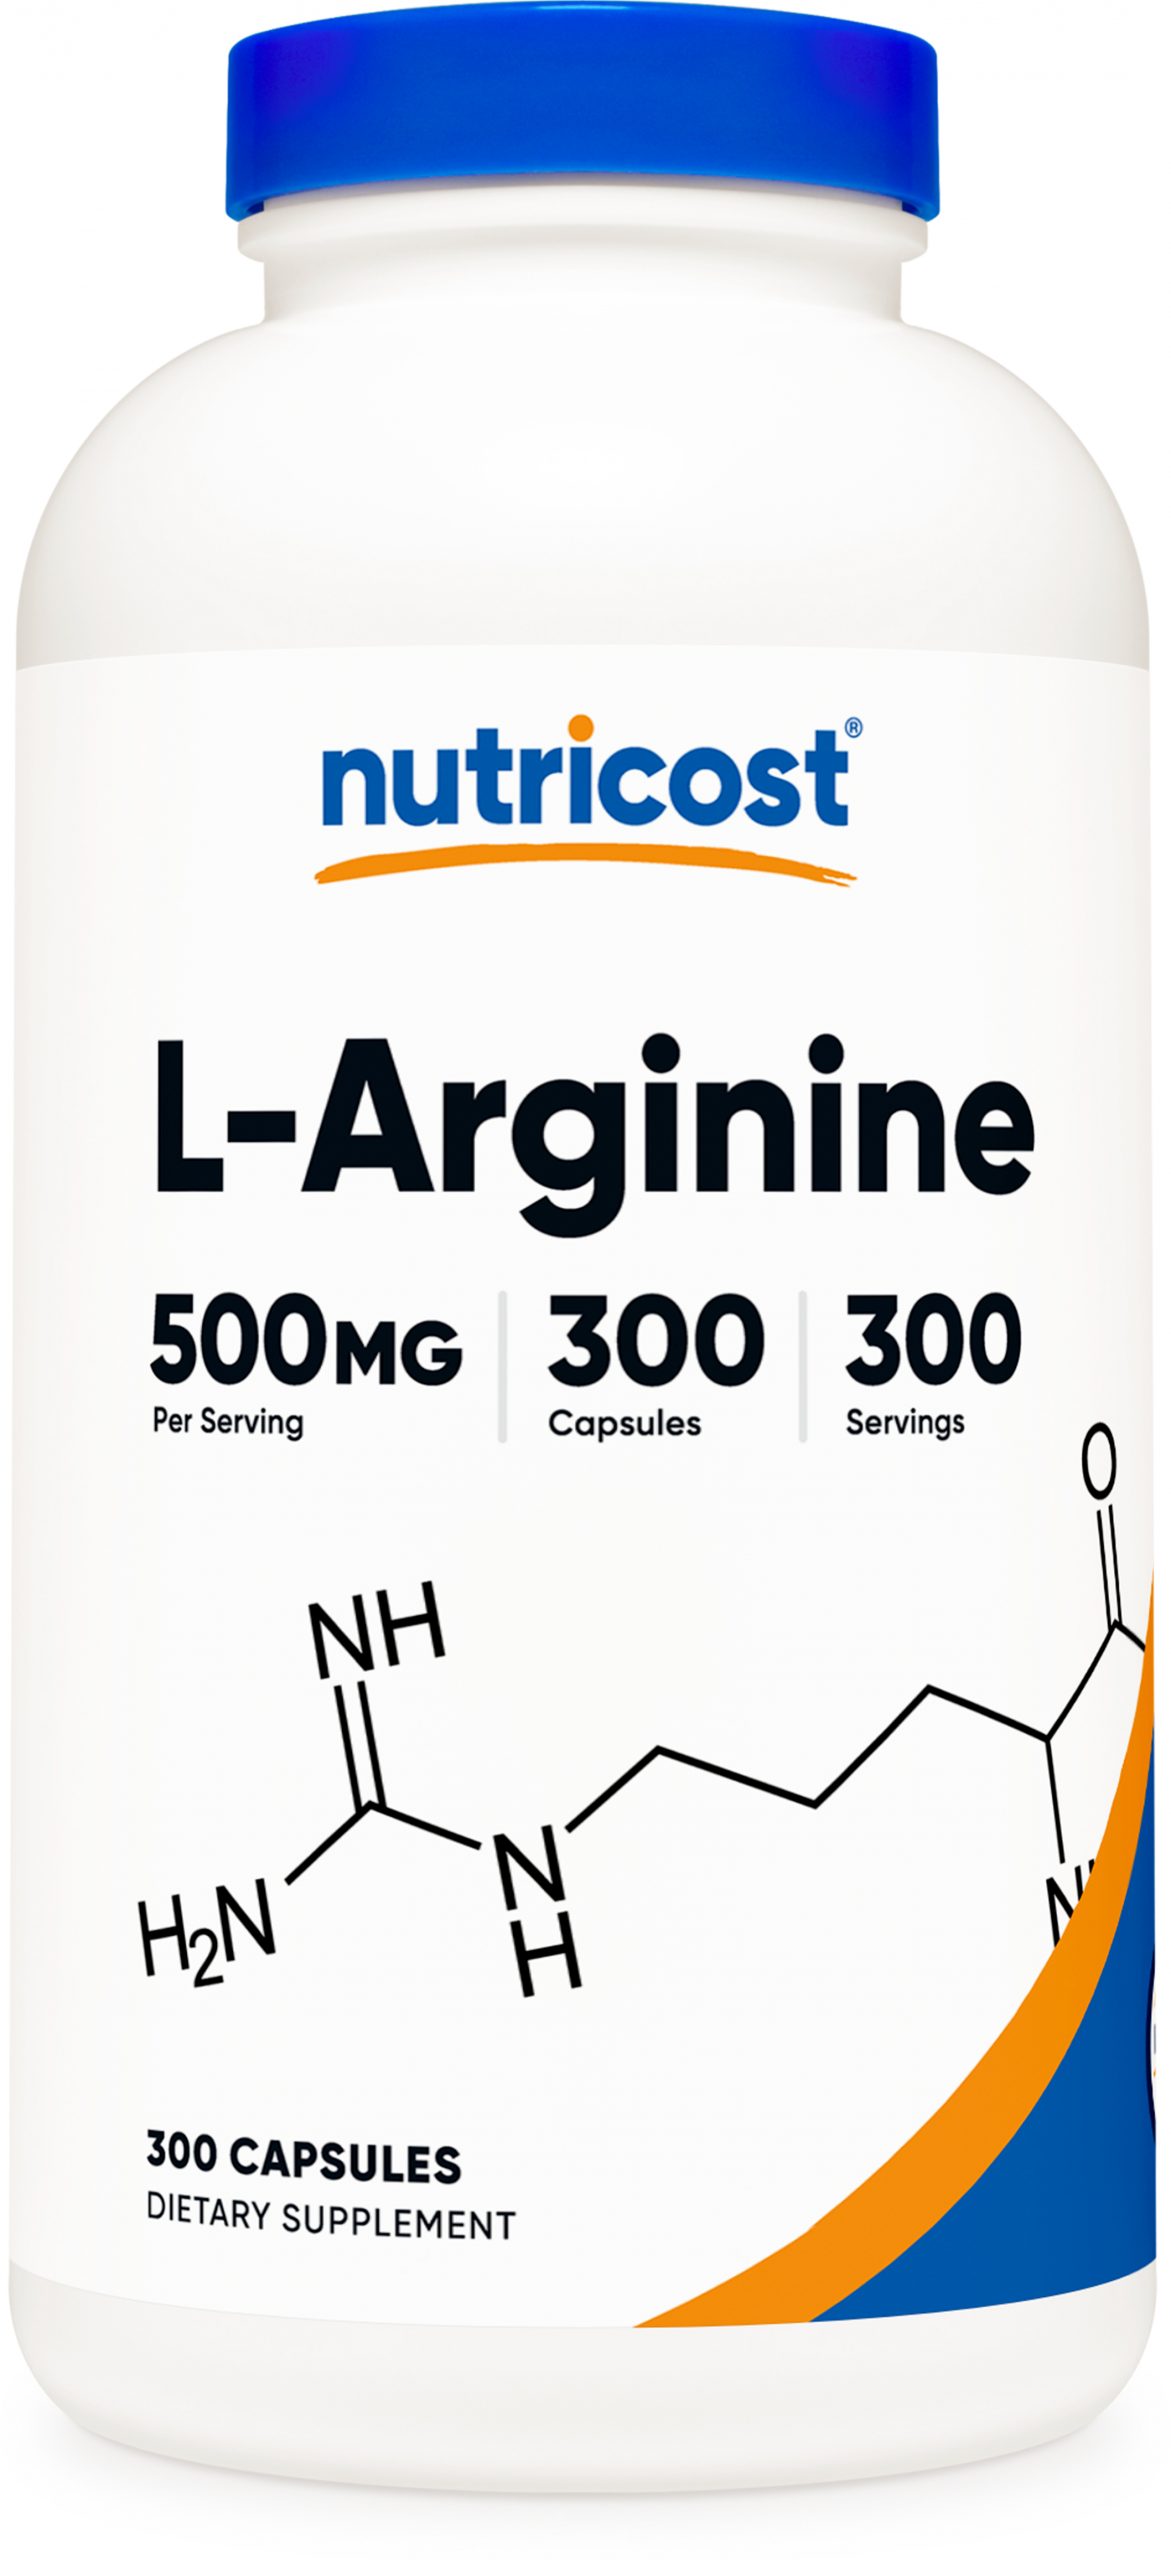 nutricost l-arginine capsules bottle